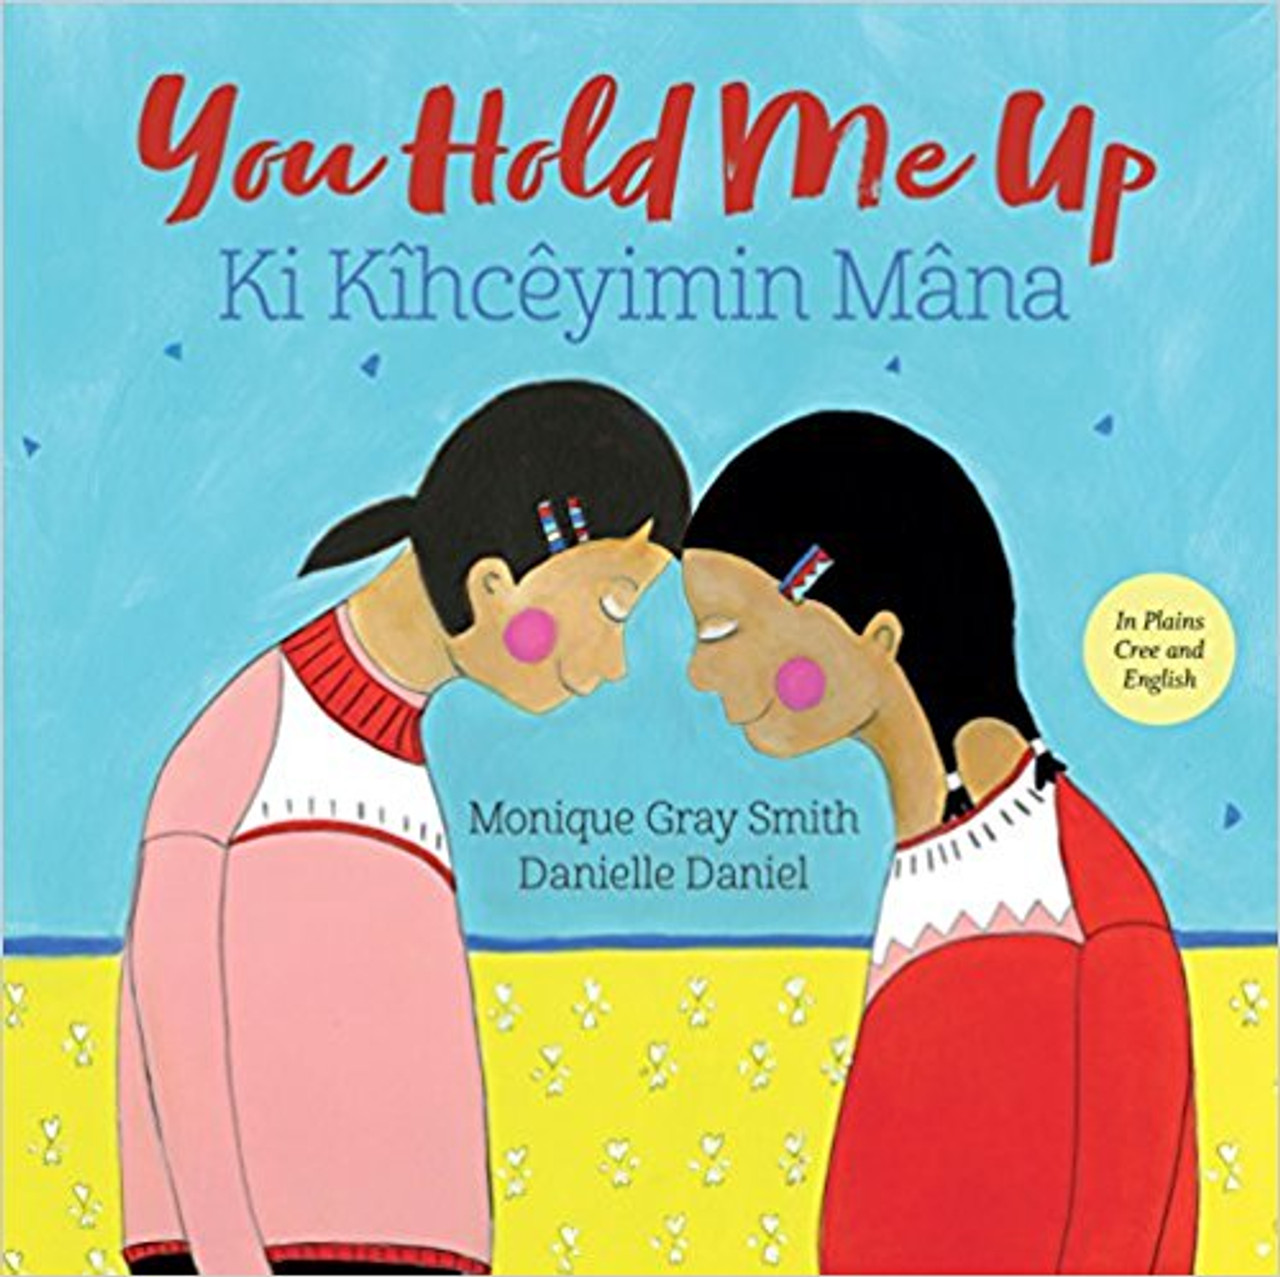 You Hold Me Up/Ki Kihceyimin Mana by Monique Gray Smith